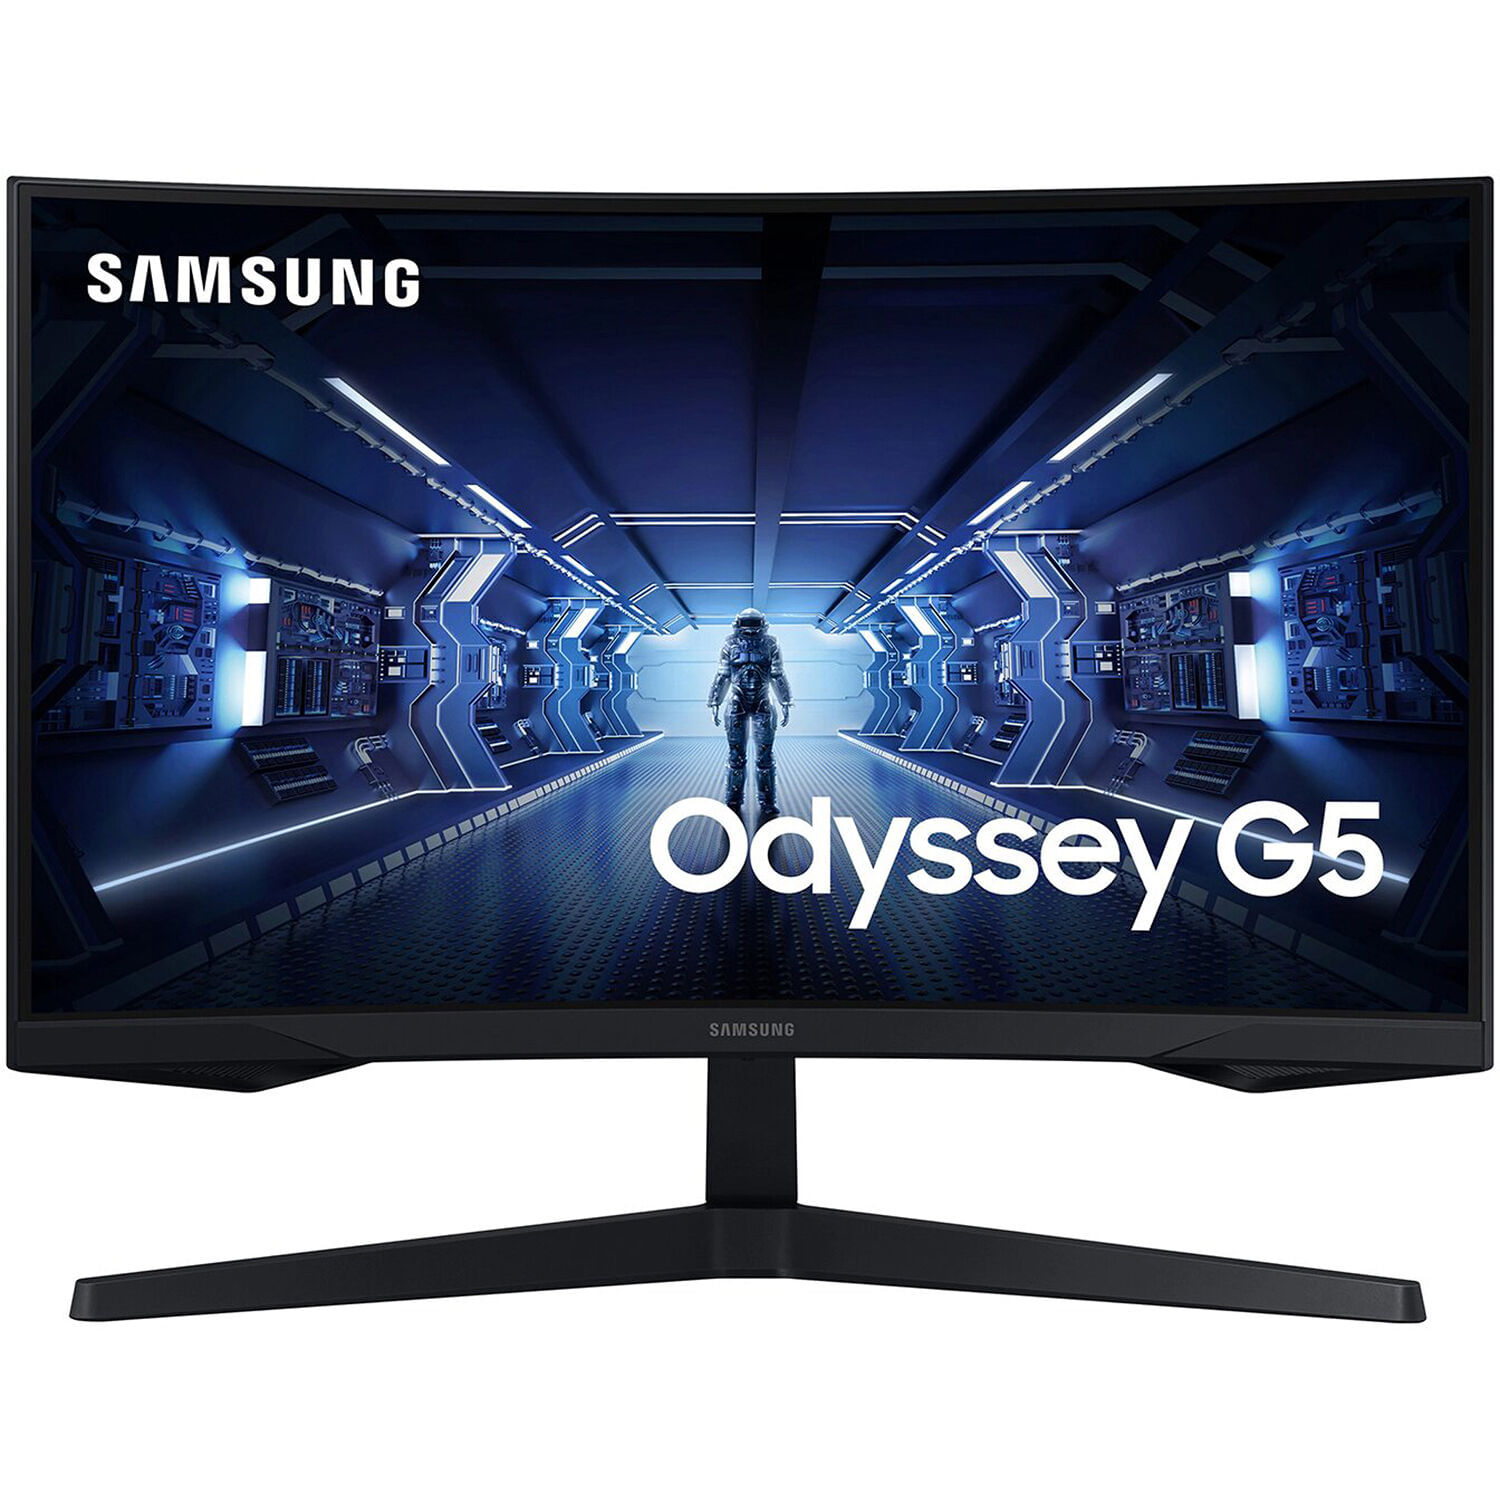 Samsung G5 Odyssey 27 "16: 9 Curvado 144 Hz Freesync QHD HDR VA Gaming Monitor